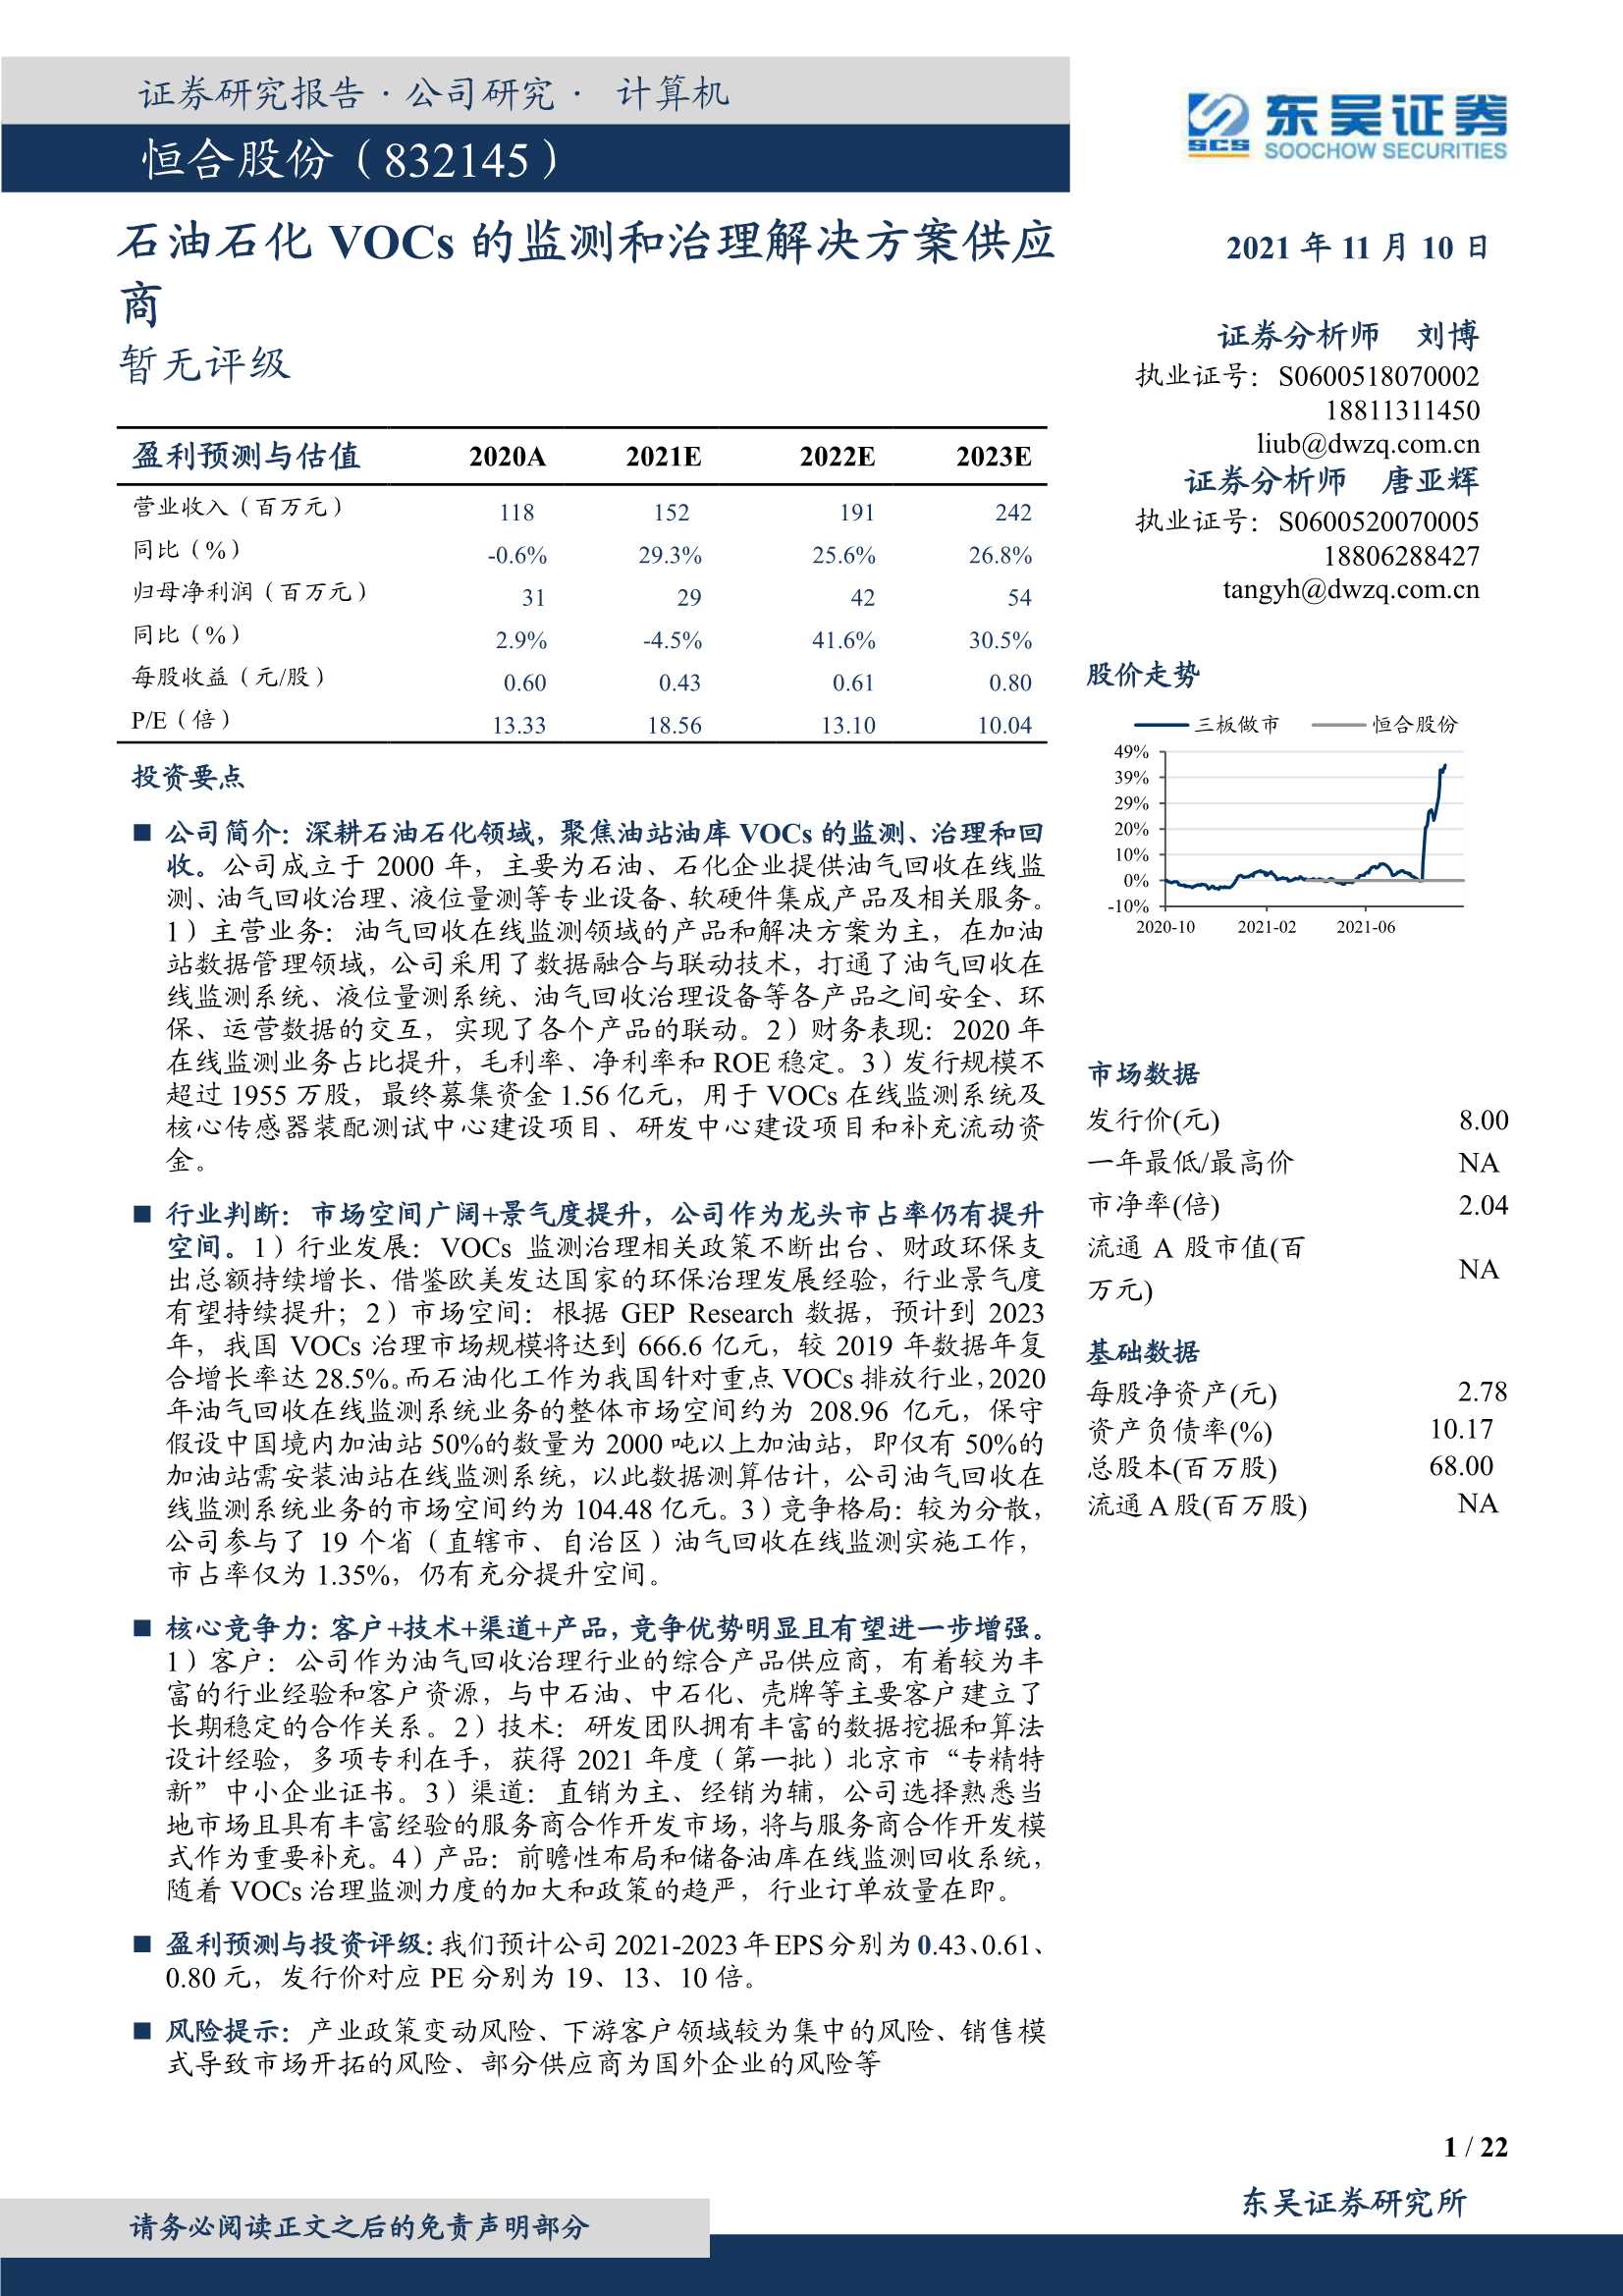 东吴证券-恒合股份-832145-石油石化VOCs的监测和治理解决方案供应商-20211110-22页